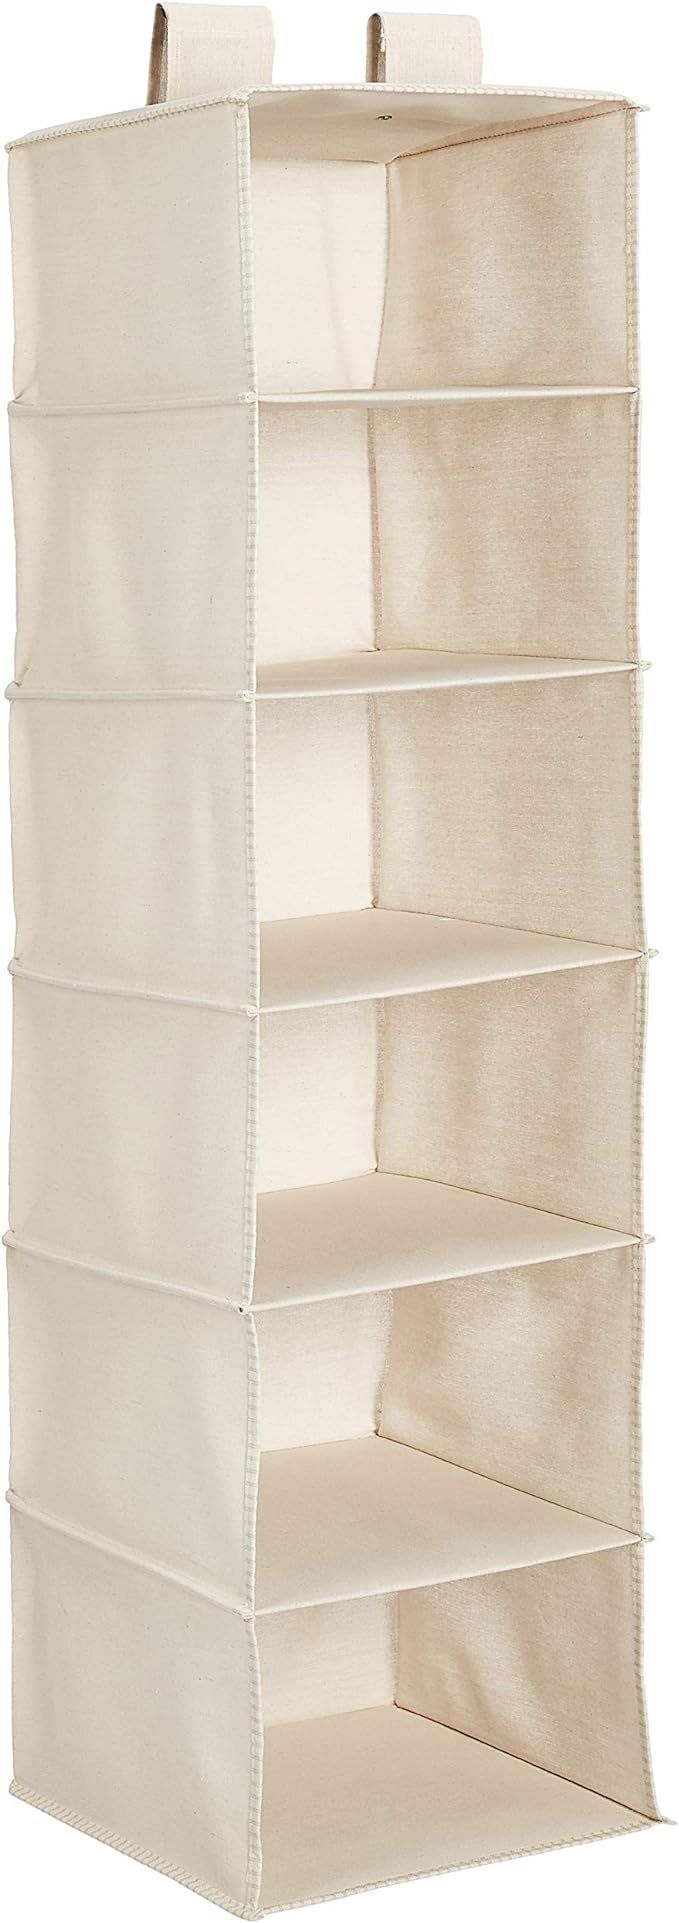 Amazon Basics Hanging Closet Shelf - 6-Tier, Canvas | Amazon (US)